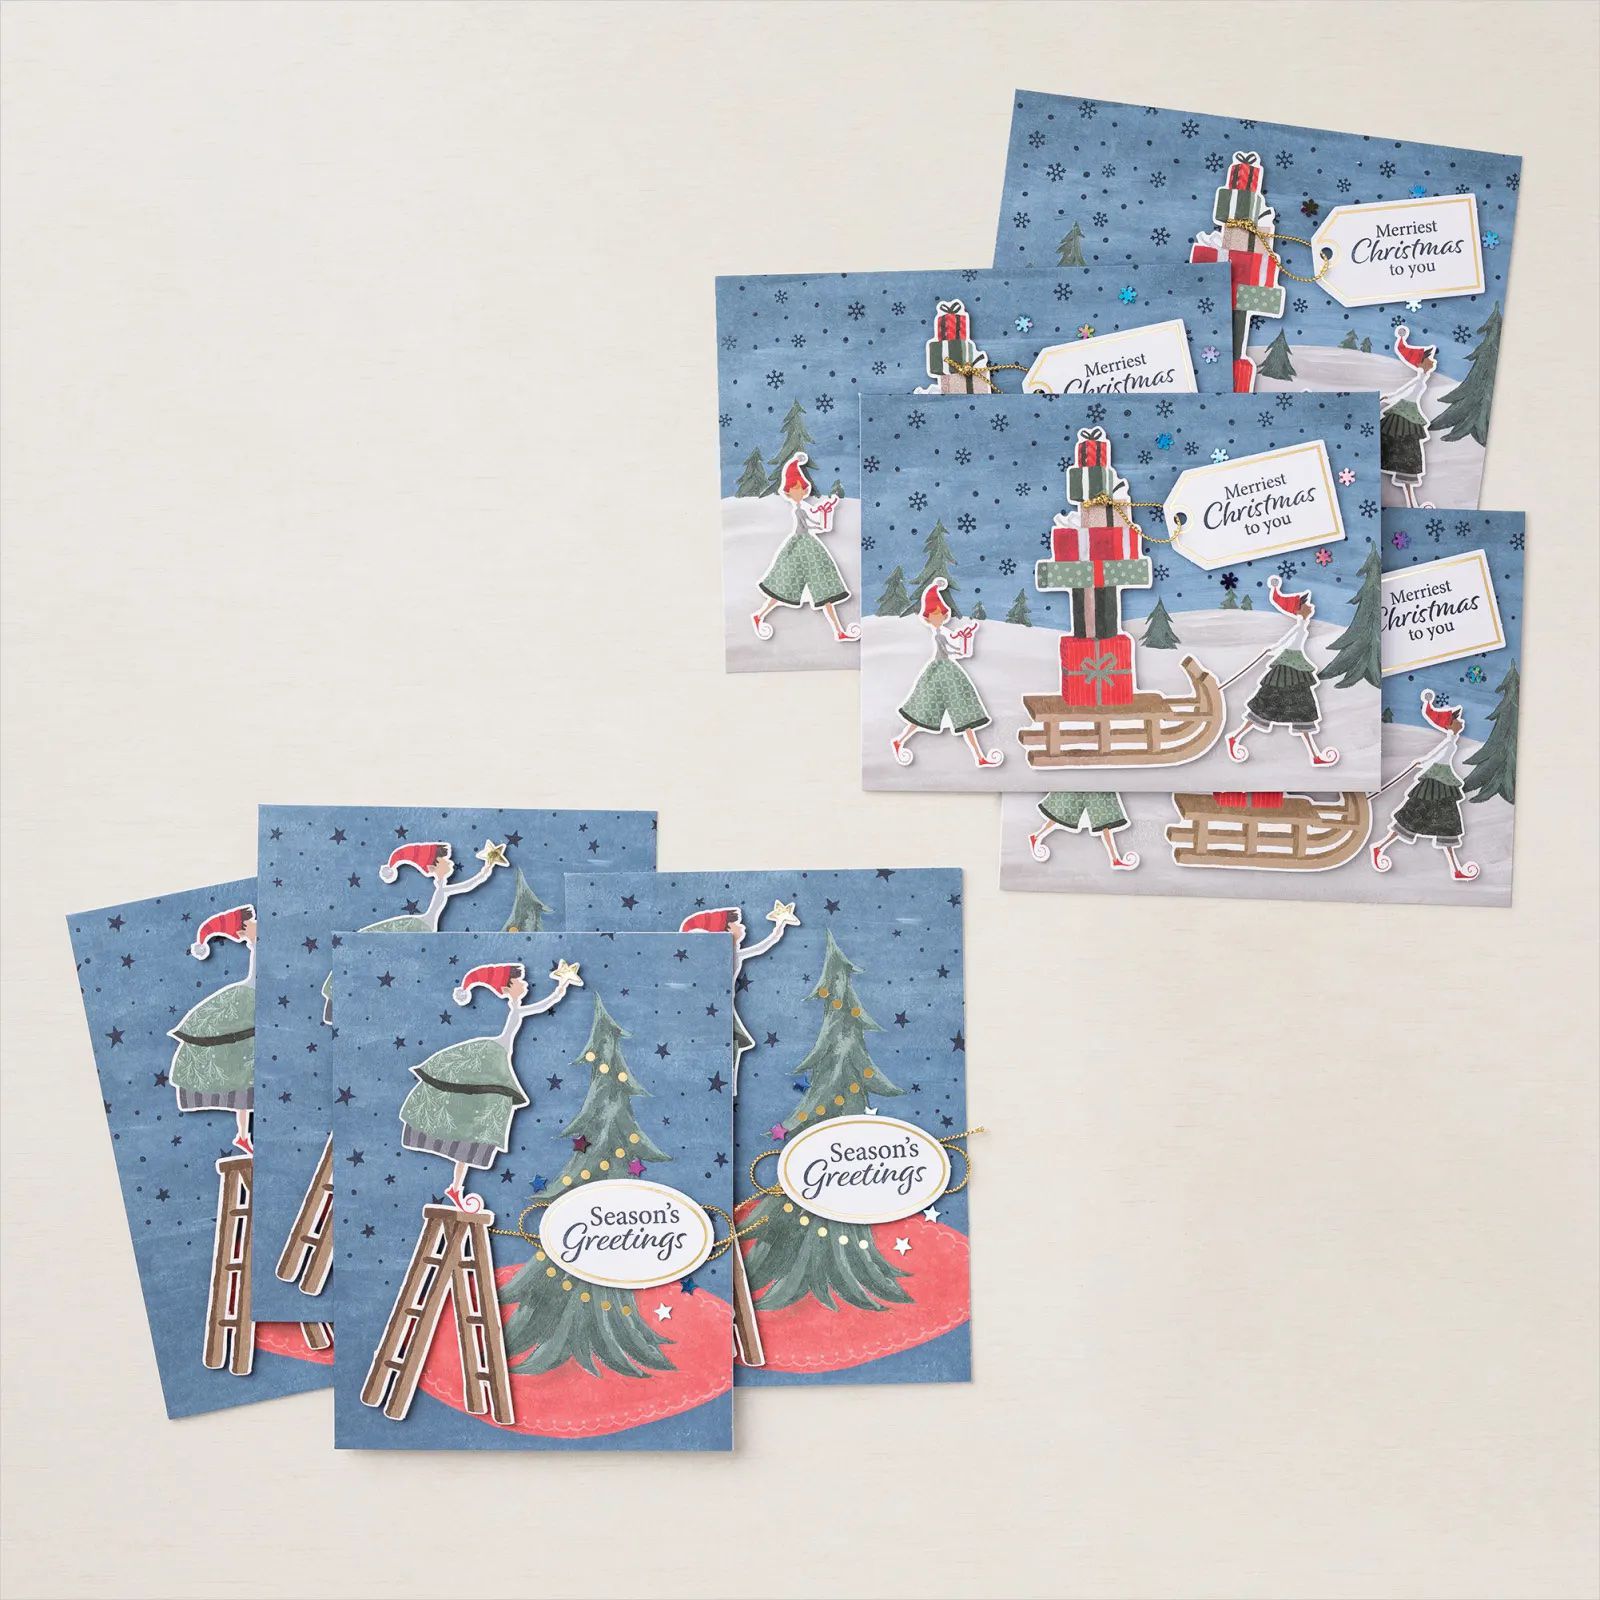 Fantaisie de Noël est un adorable kit de cartes festives au look moderne 158167 stampin up commander acheter